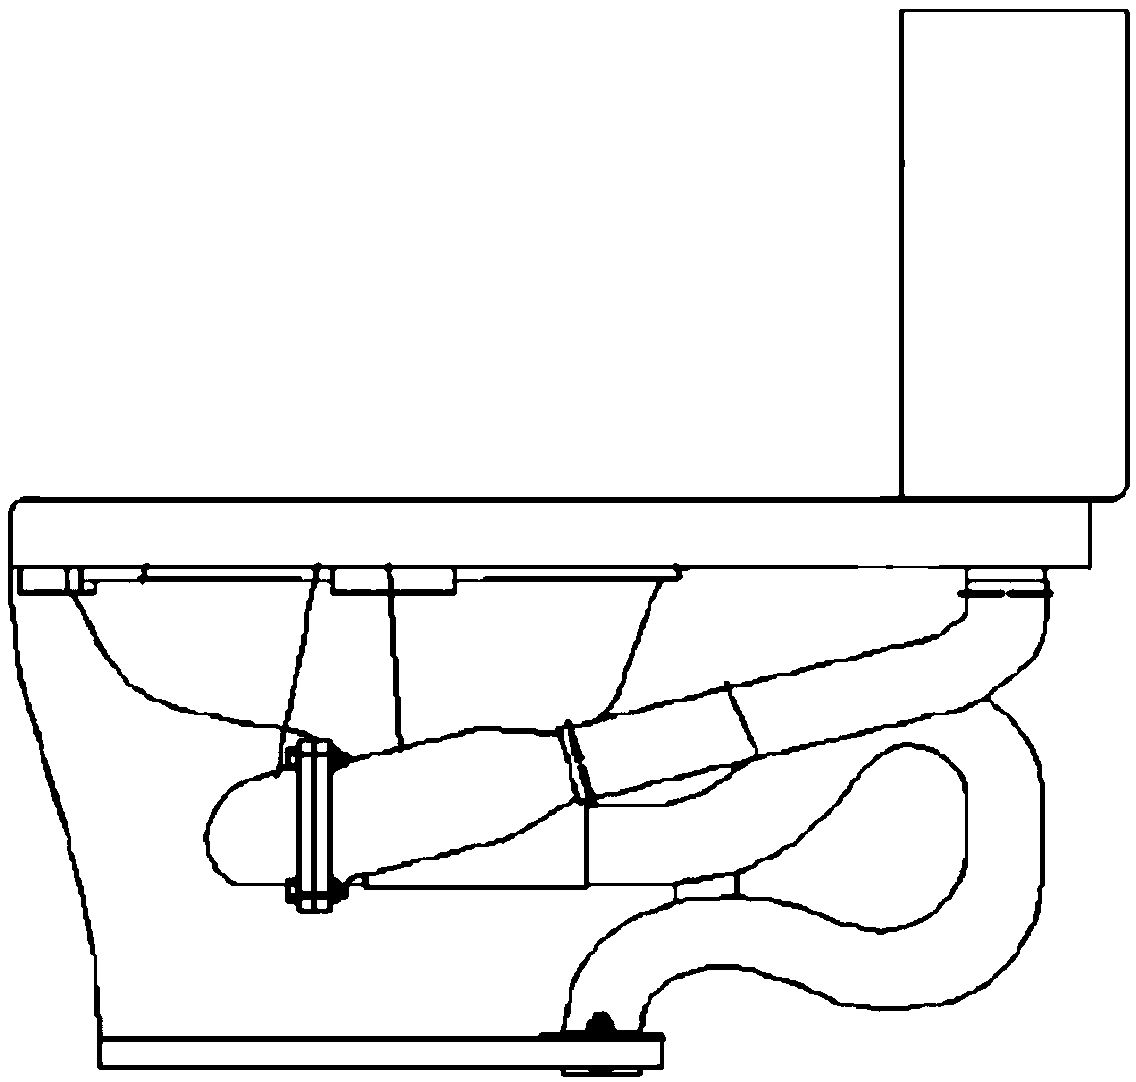 Pedestal pan flushing force control mechanism